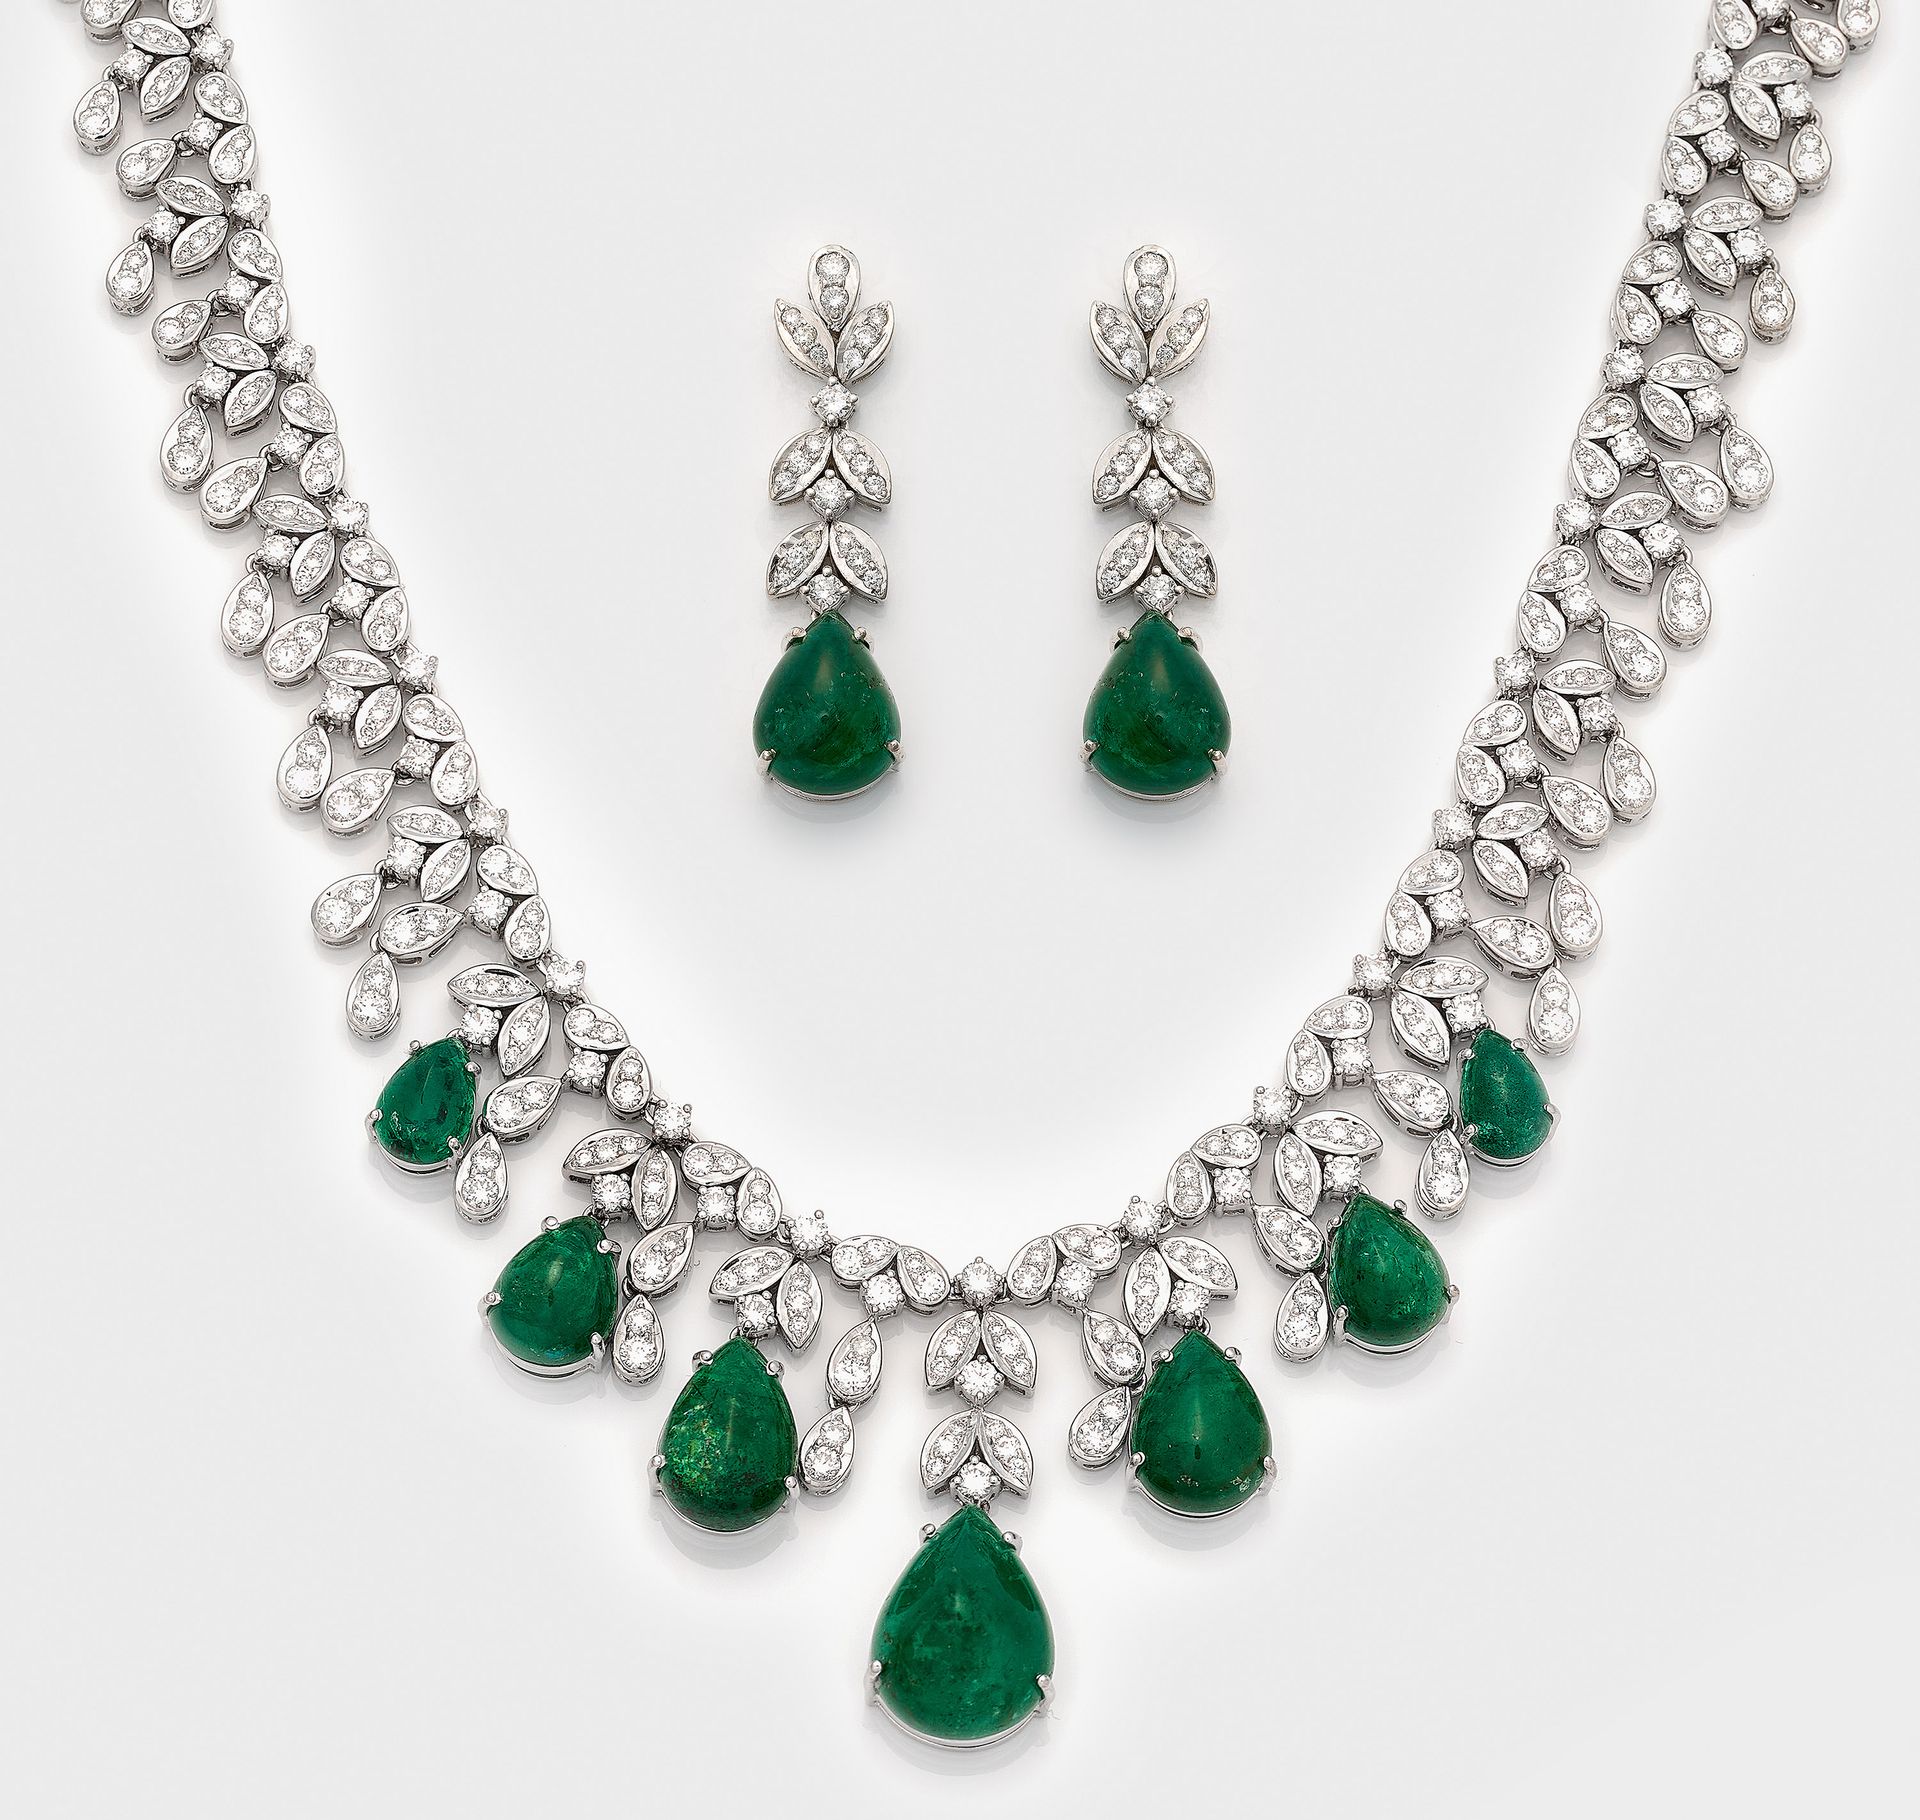 Null 镶嵌祖母绿和明亮式切割钻石的华丽珠宝项链和相应的一对耳环。正面镶嵌明亮式切割钻石共约 14.40 克拉，9 颗渐变祖母绿共约 45.35 克拉；总重约&hellip;